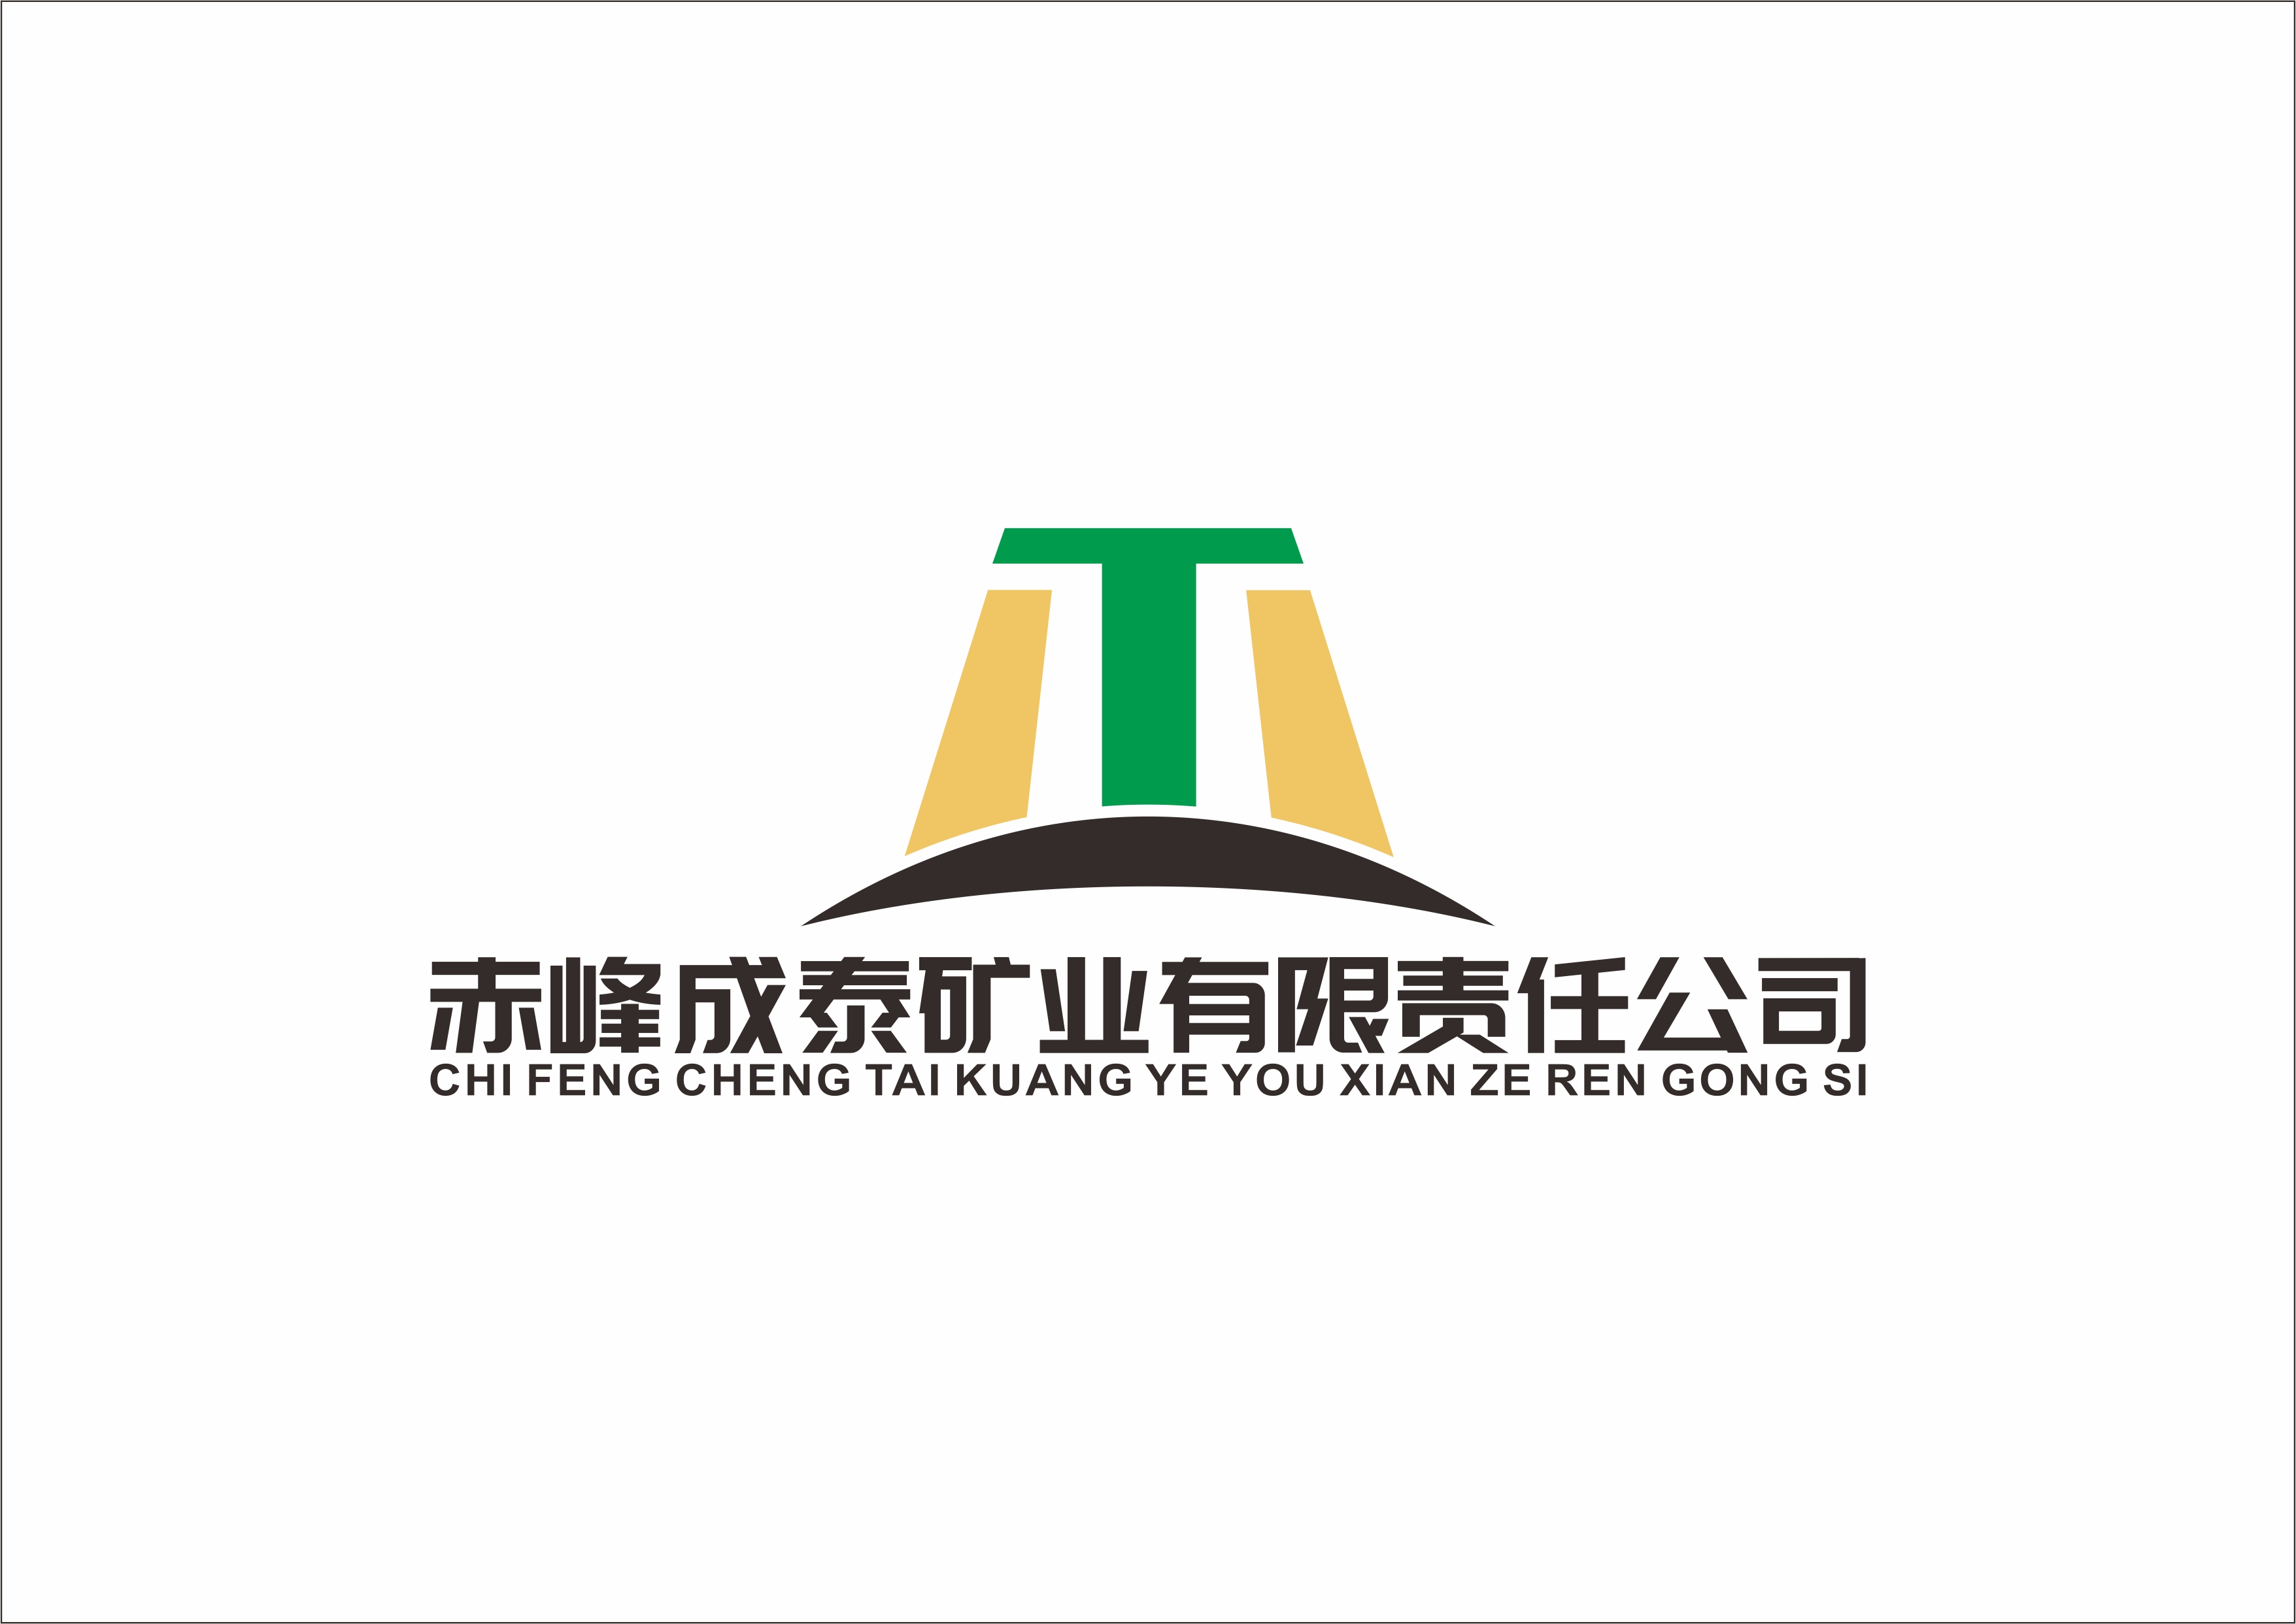 赤峰成泰矿业有限责任公司邀您参观2021武汉国际殡仪博览会